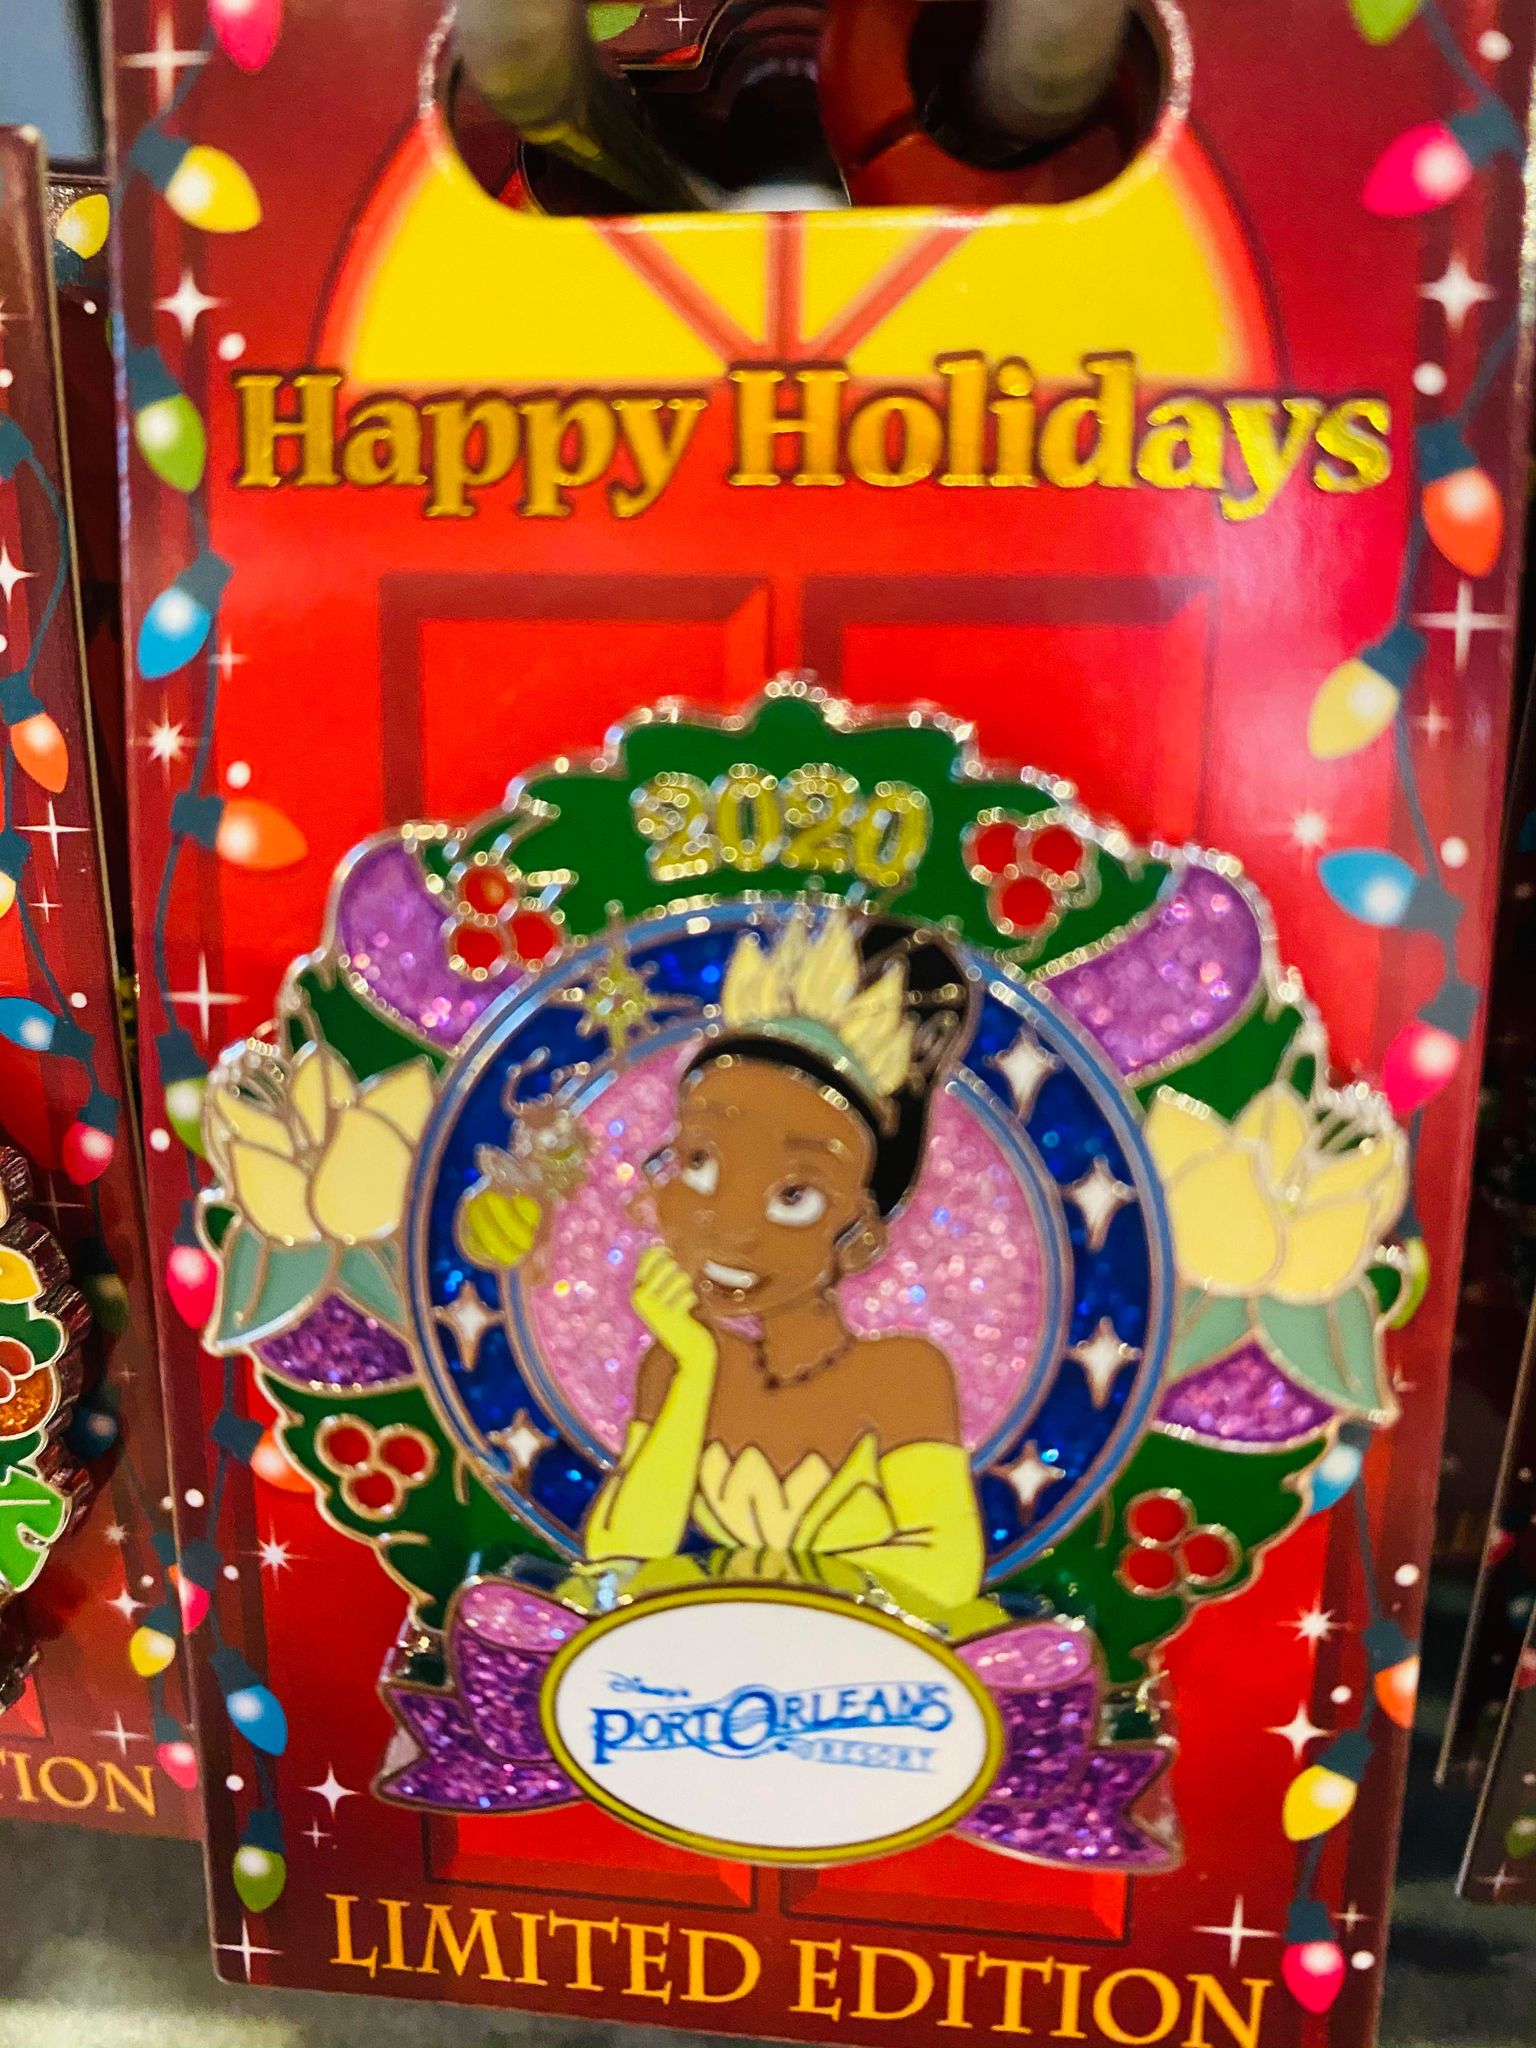 2020 Disney Holiday Pin